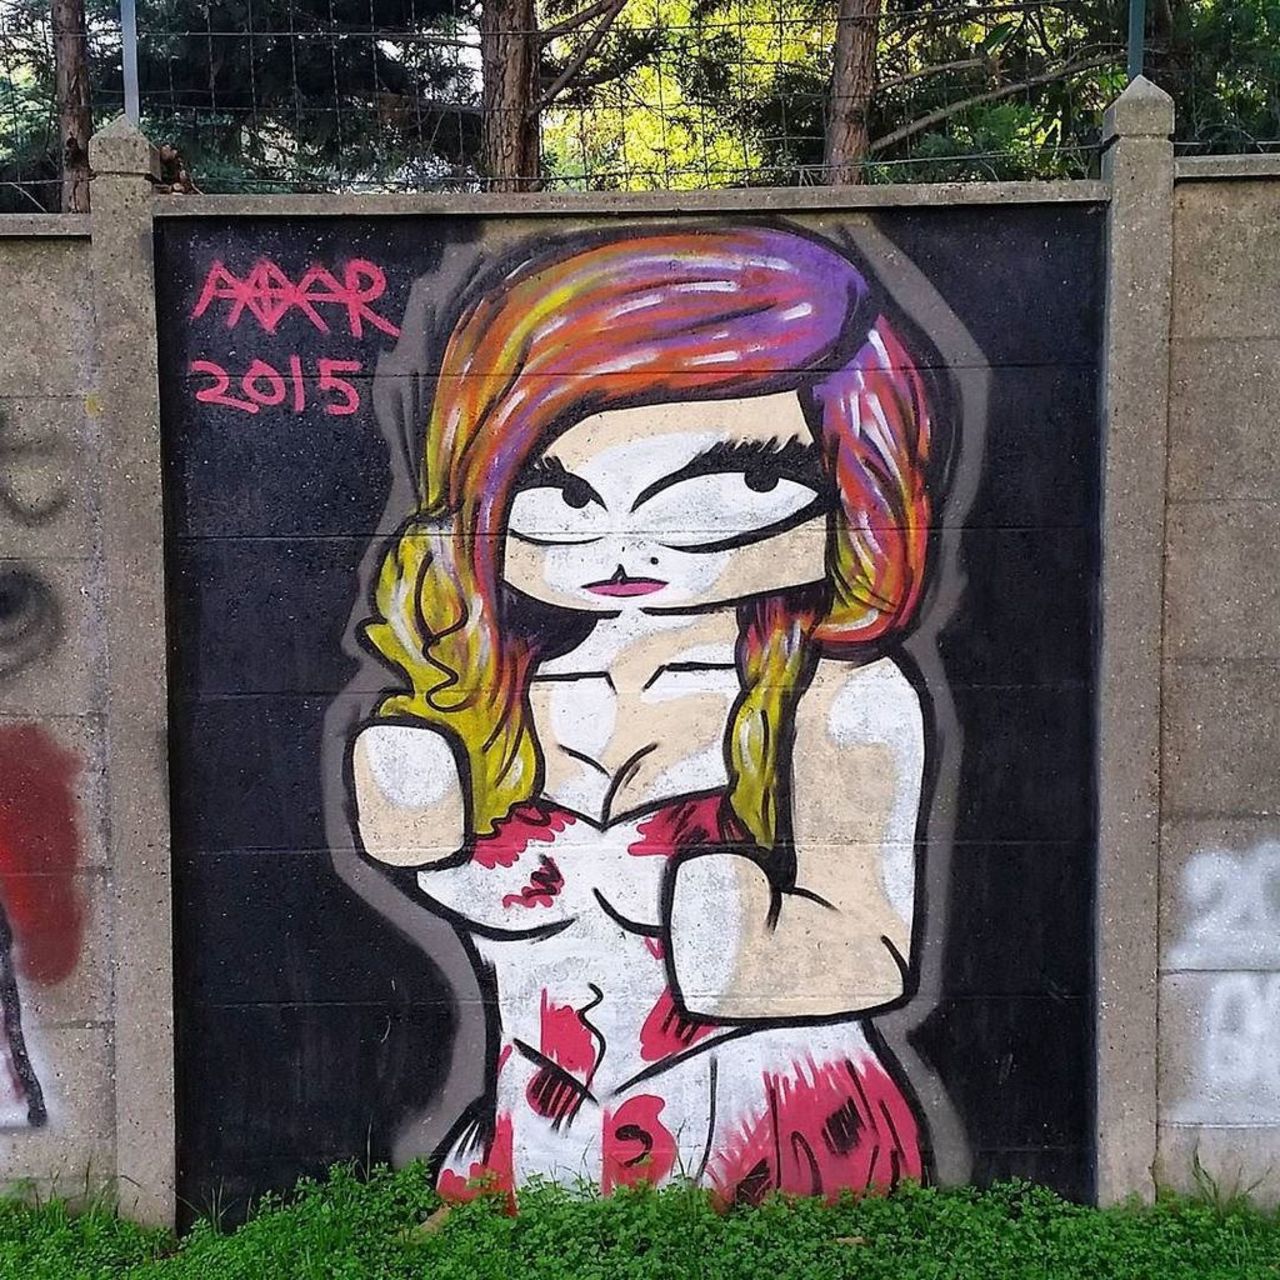 RT @StArtEverywhere: Girls power By Avataar @avataarofficiel #vitrystreetart #urbainart #streetart #graffiti #graff #graffittiart #art2v… https://t.co/8wt75F3quV